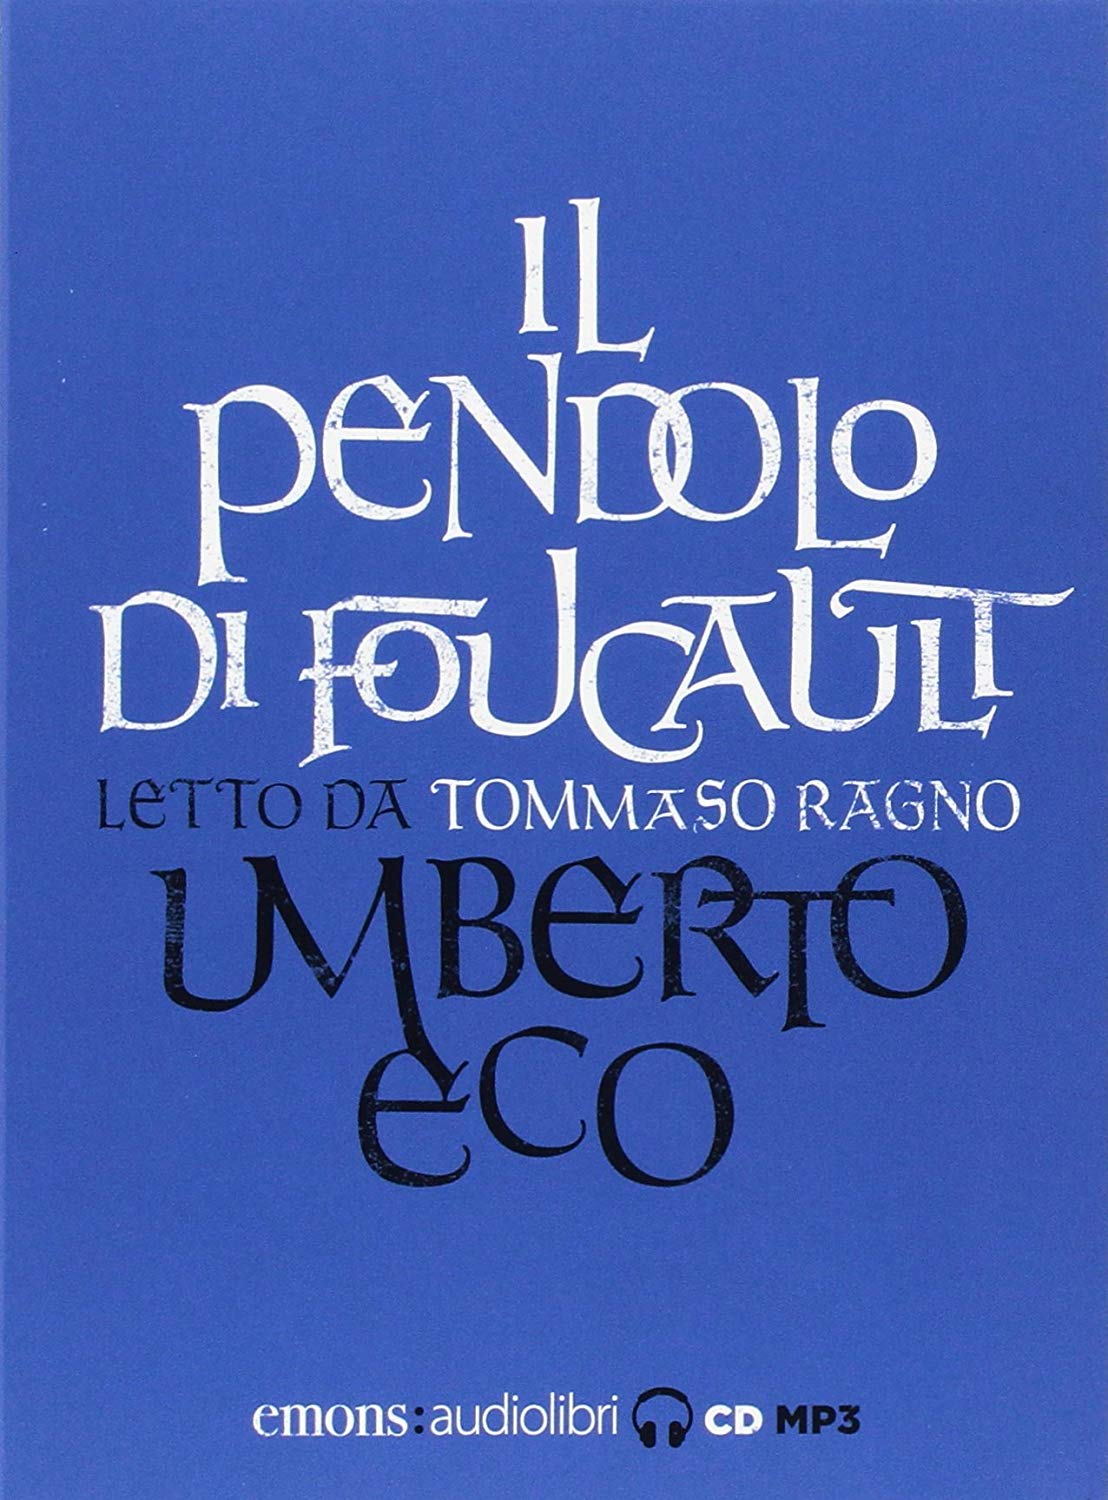 Audiolibro Umberto Eco - Eco, Umberto (Audiolibro) NUOVO SIGILLATO, EDIZIONE DEL 08/11/2017 SUBITO DISPONIBILE